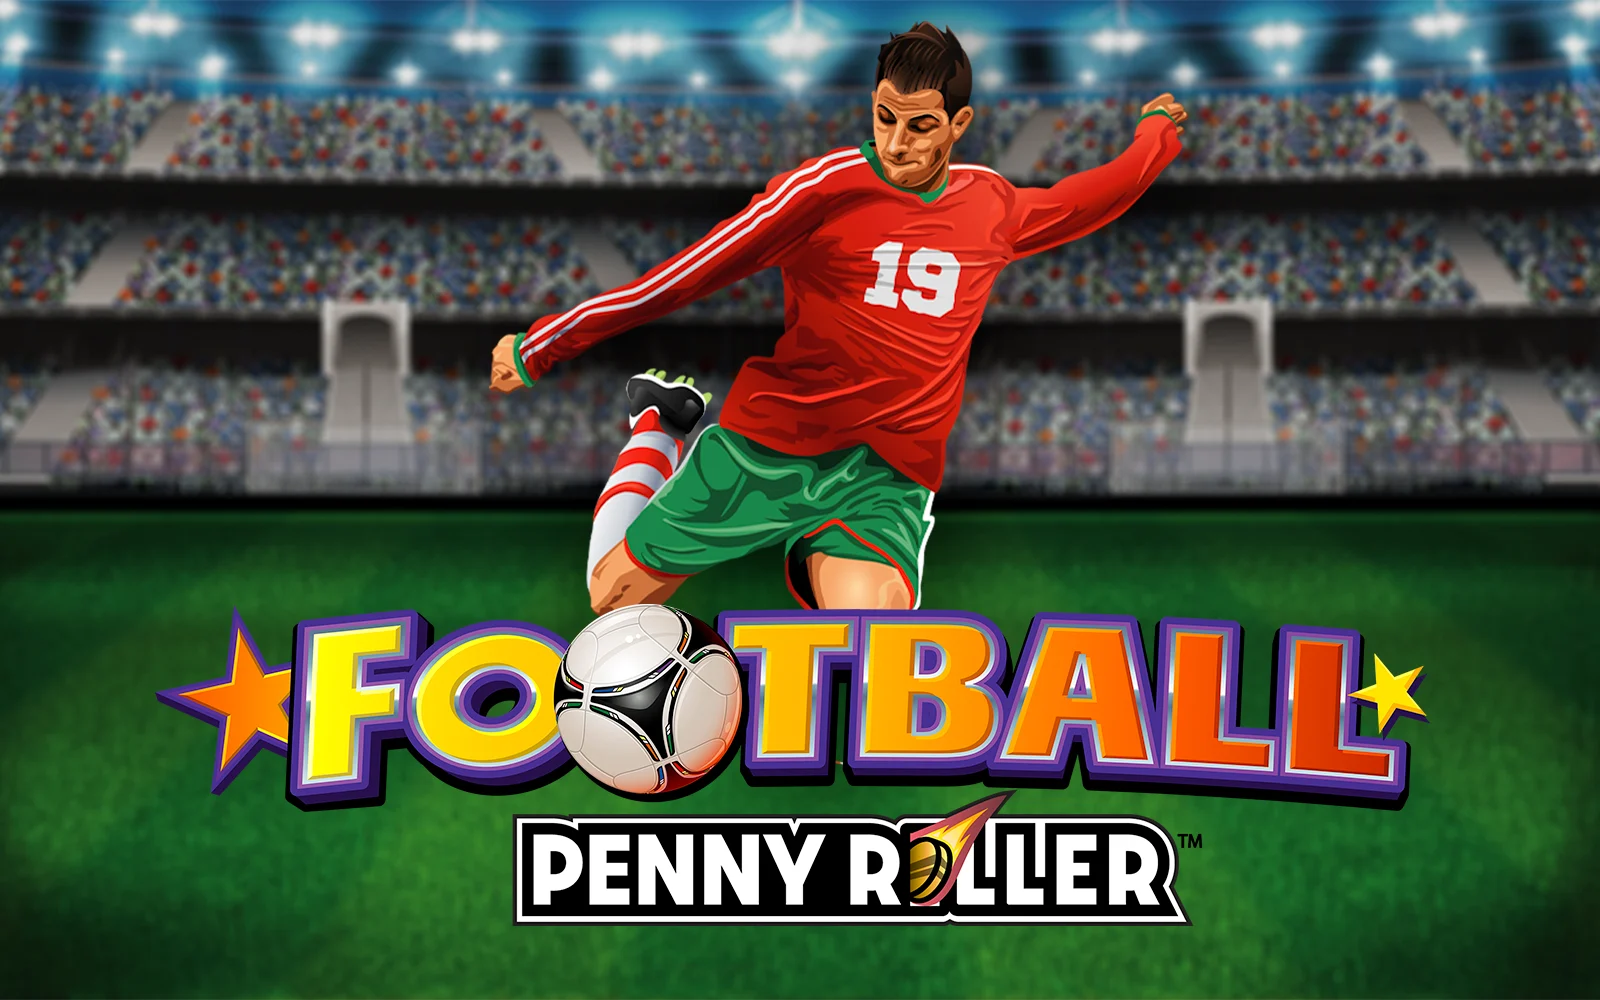 Jouer à Football Penny Roller™ sur le casino en ligne Starcasino.be